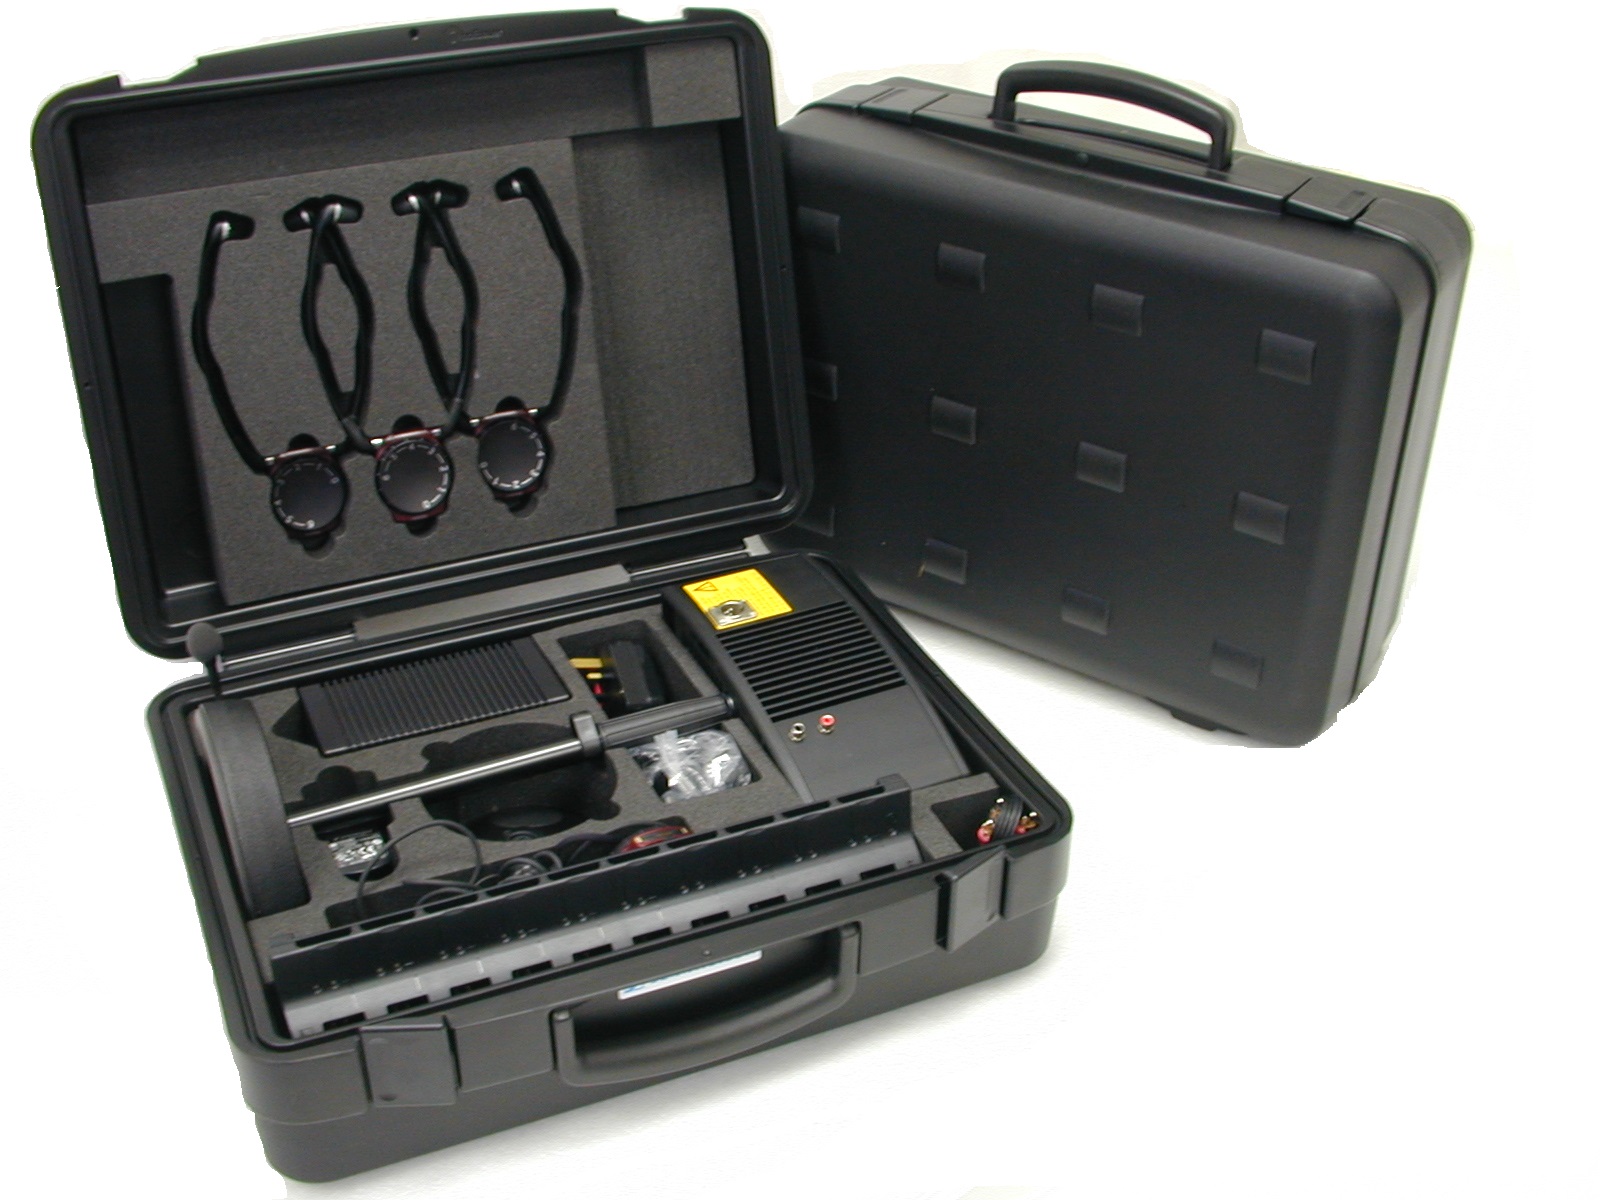 Broadcast Equipment Cases